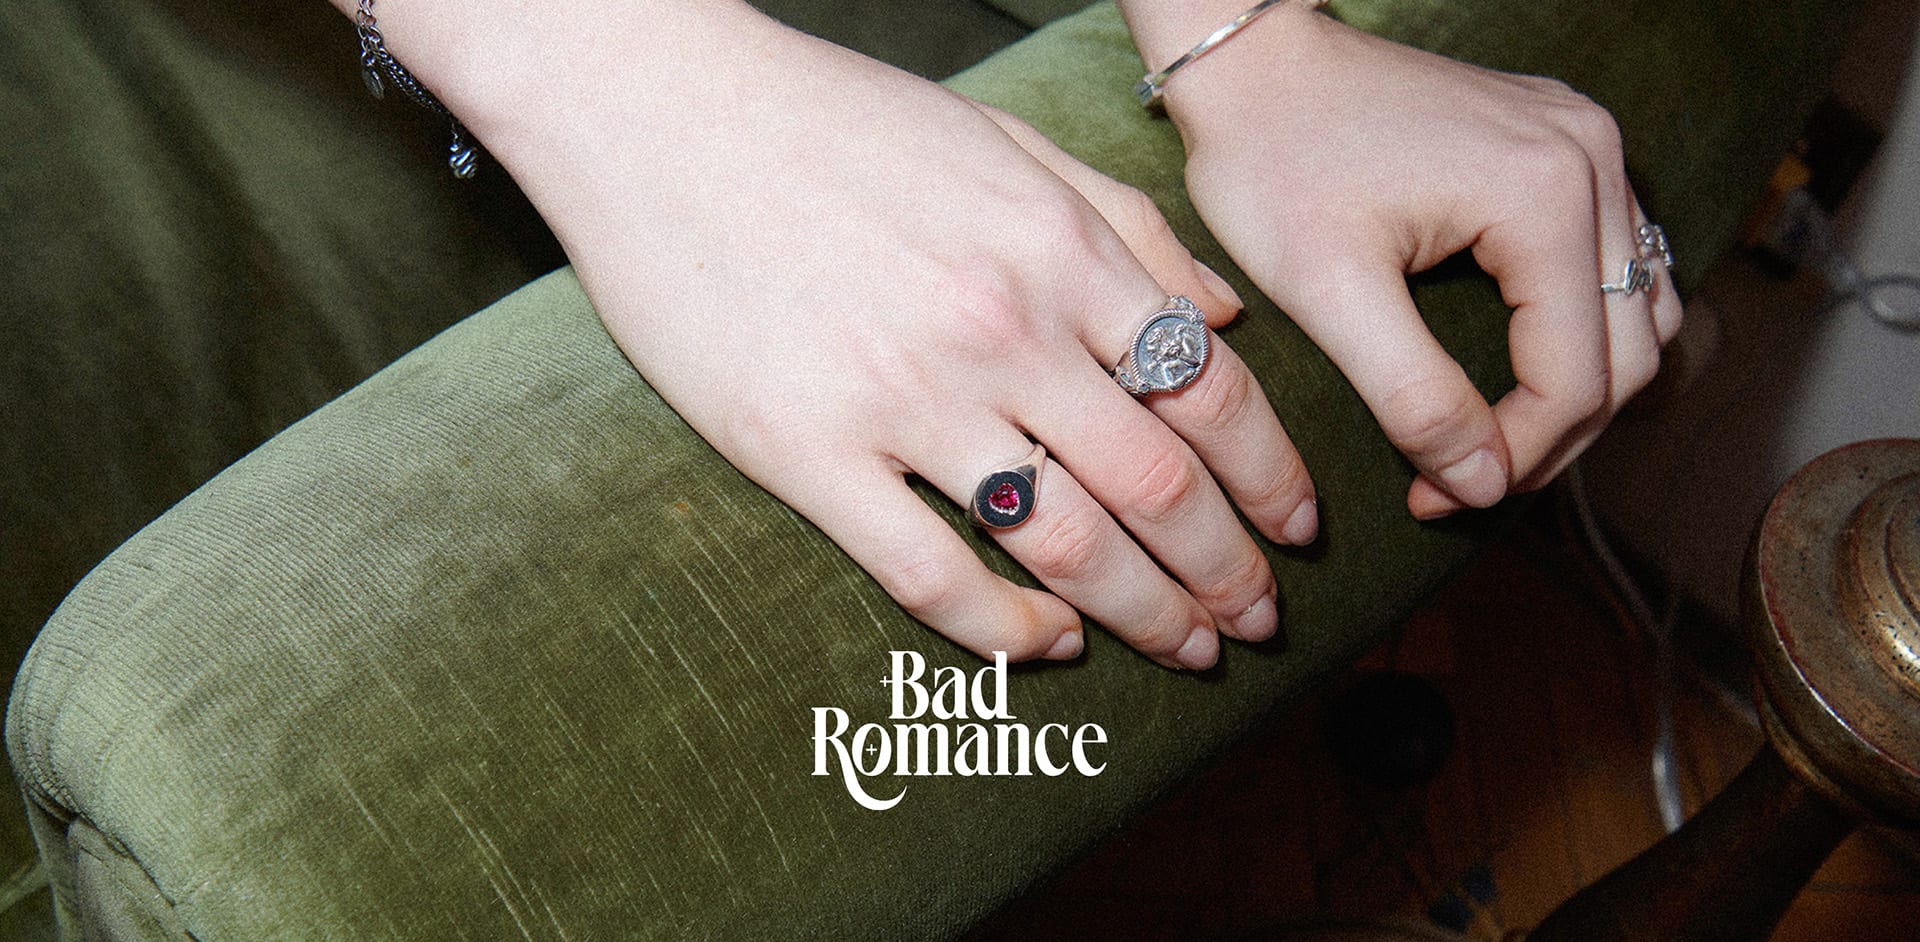 Scopri la collezione Bad Romance di Nove25